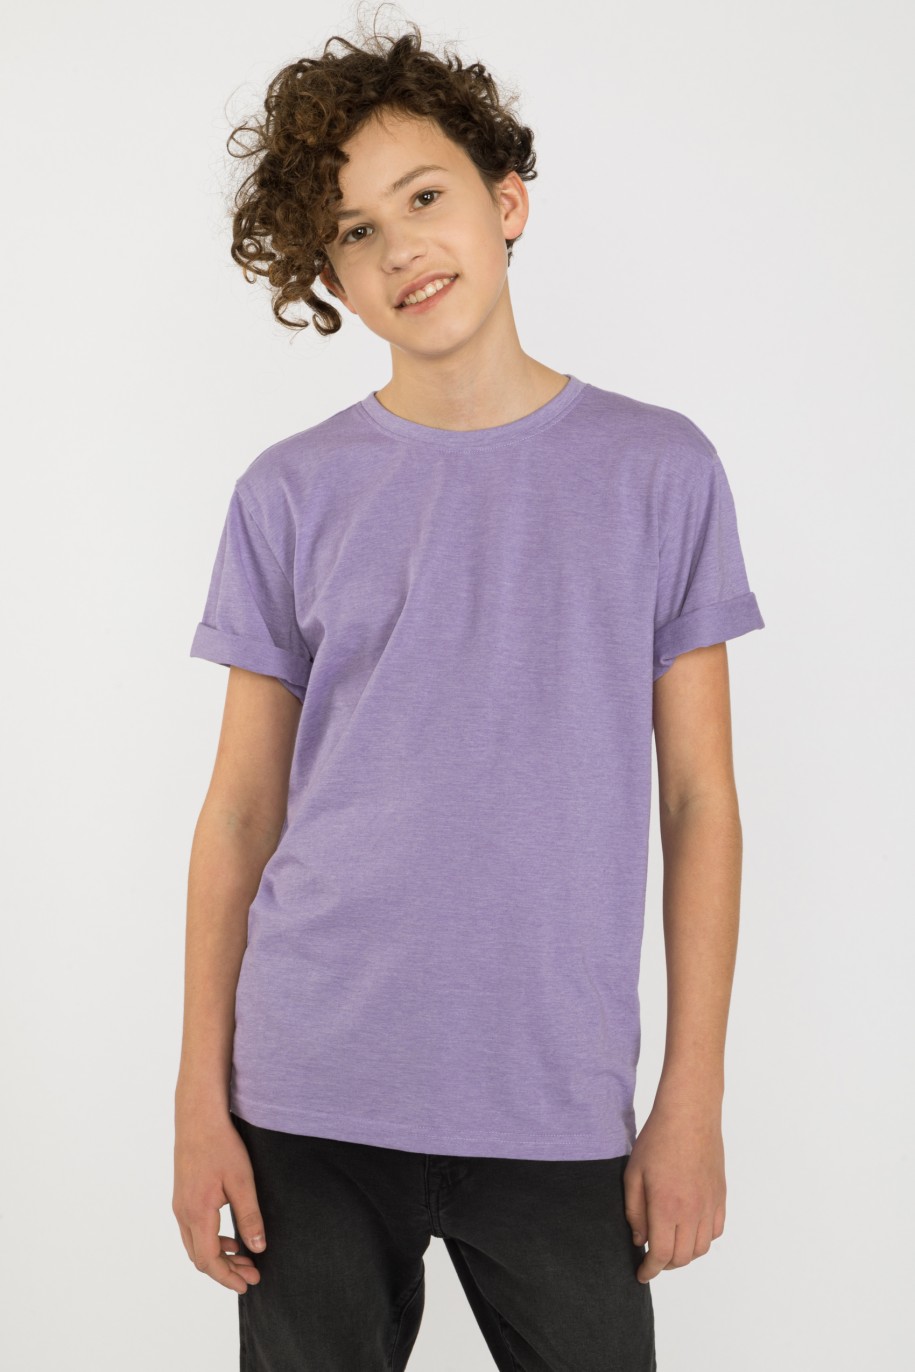 Fioletowy gładki t-shirt - 41262